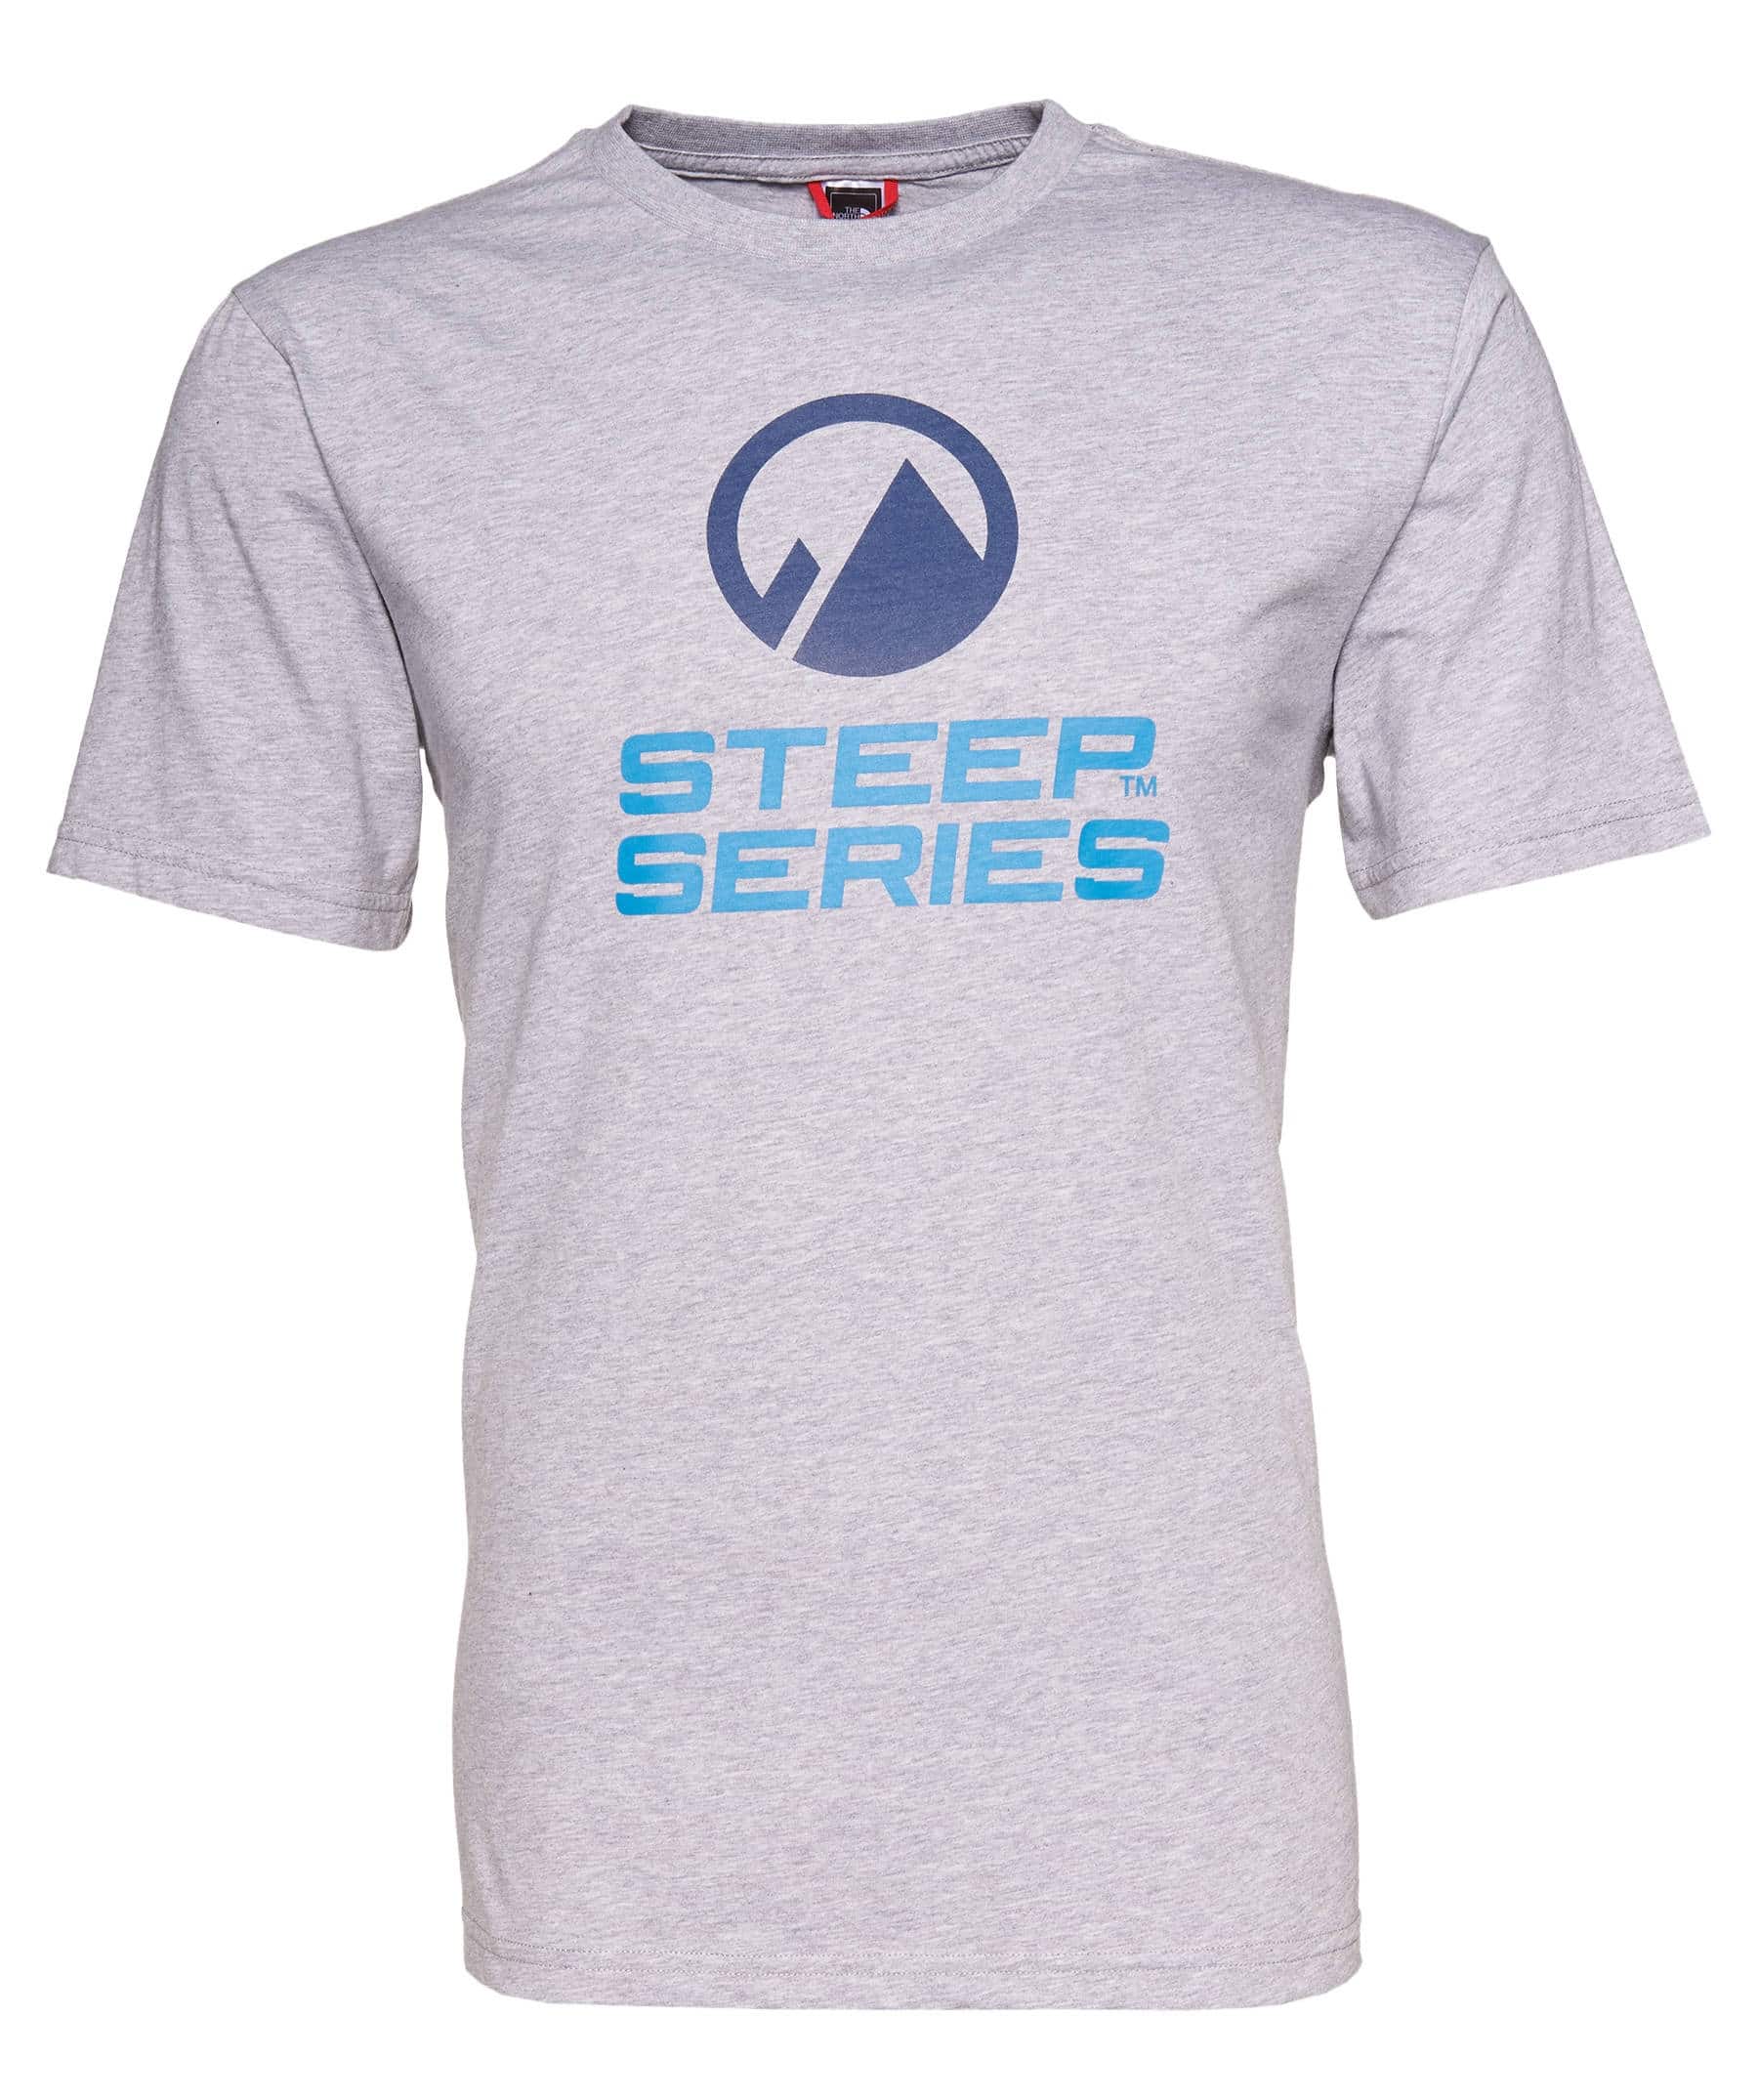 Gewinne eines von 10 Shirts der Steep Series von The North Face